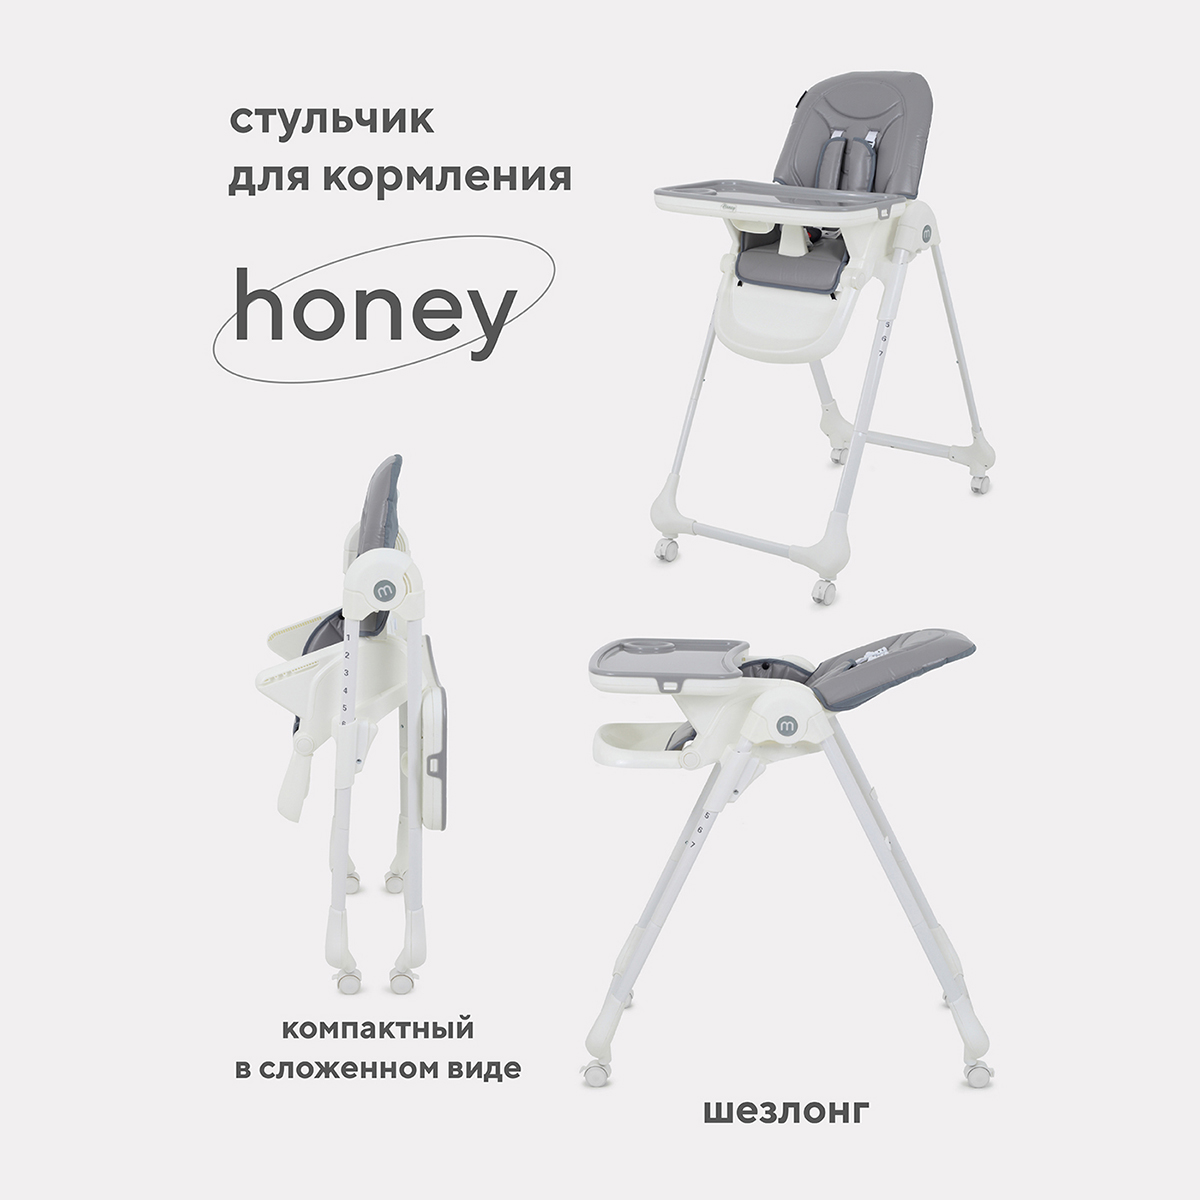 Стульчик для кормления MOWBaby HONEY от 6 месяцев RH600 grey стульчик для кормления mowbaby honey beige